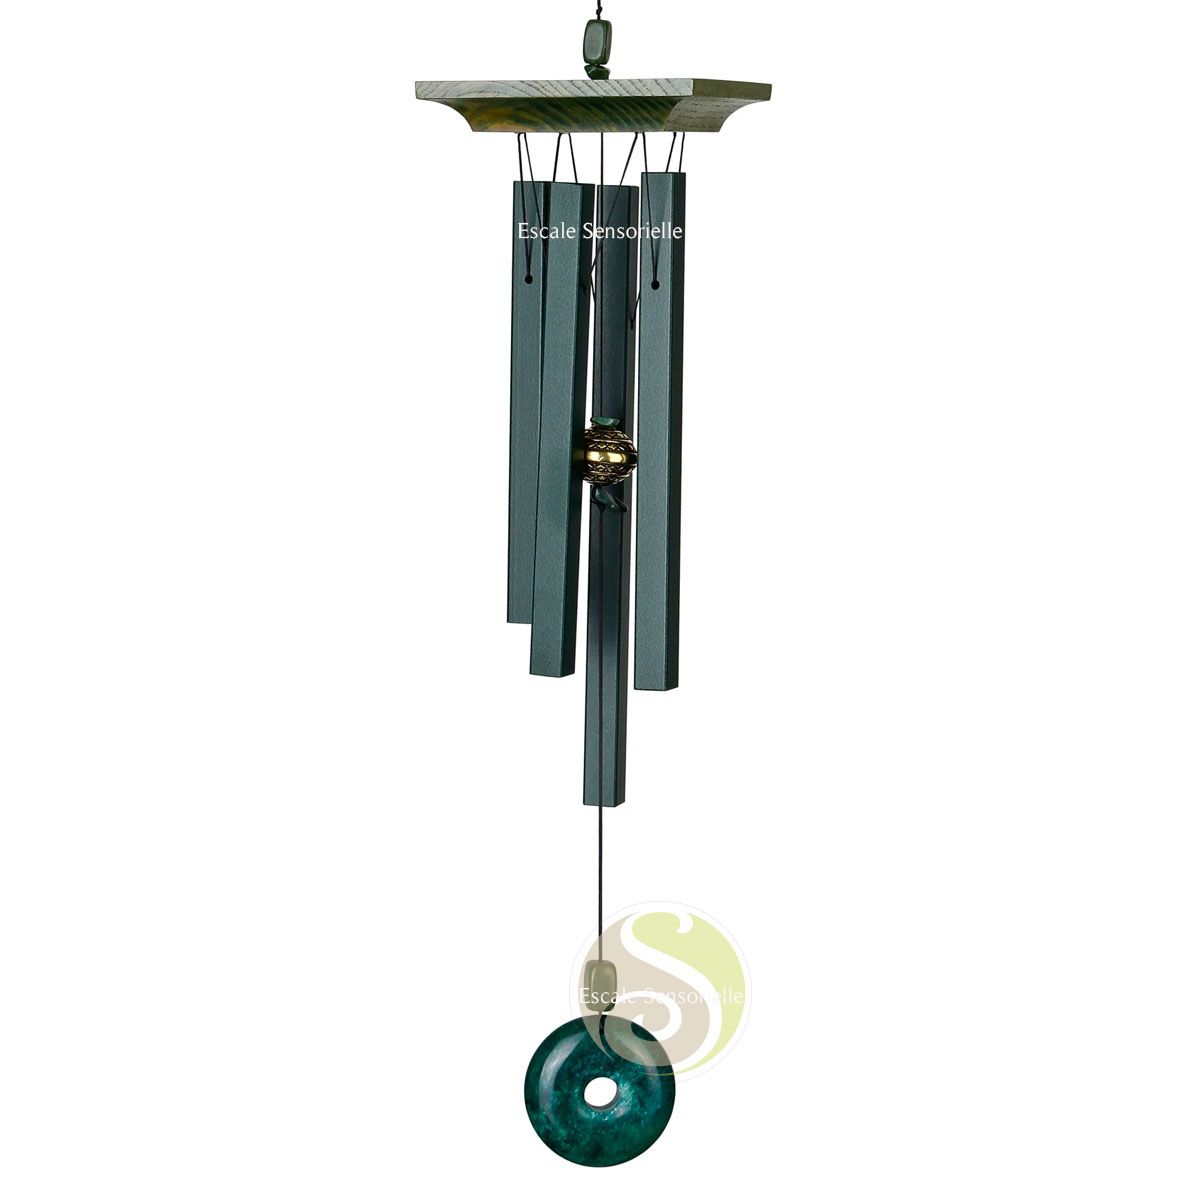 Carillon à vent jade Woodstock chimes accordé hauteur totale 56cm - Escale  Sensorielle